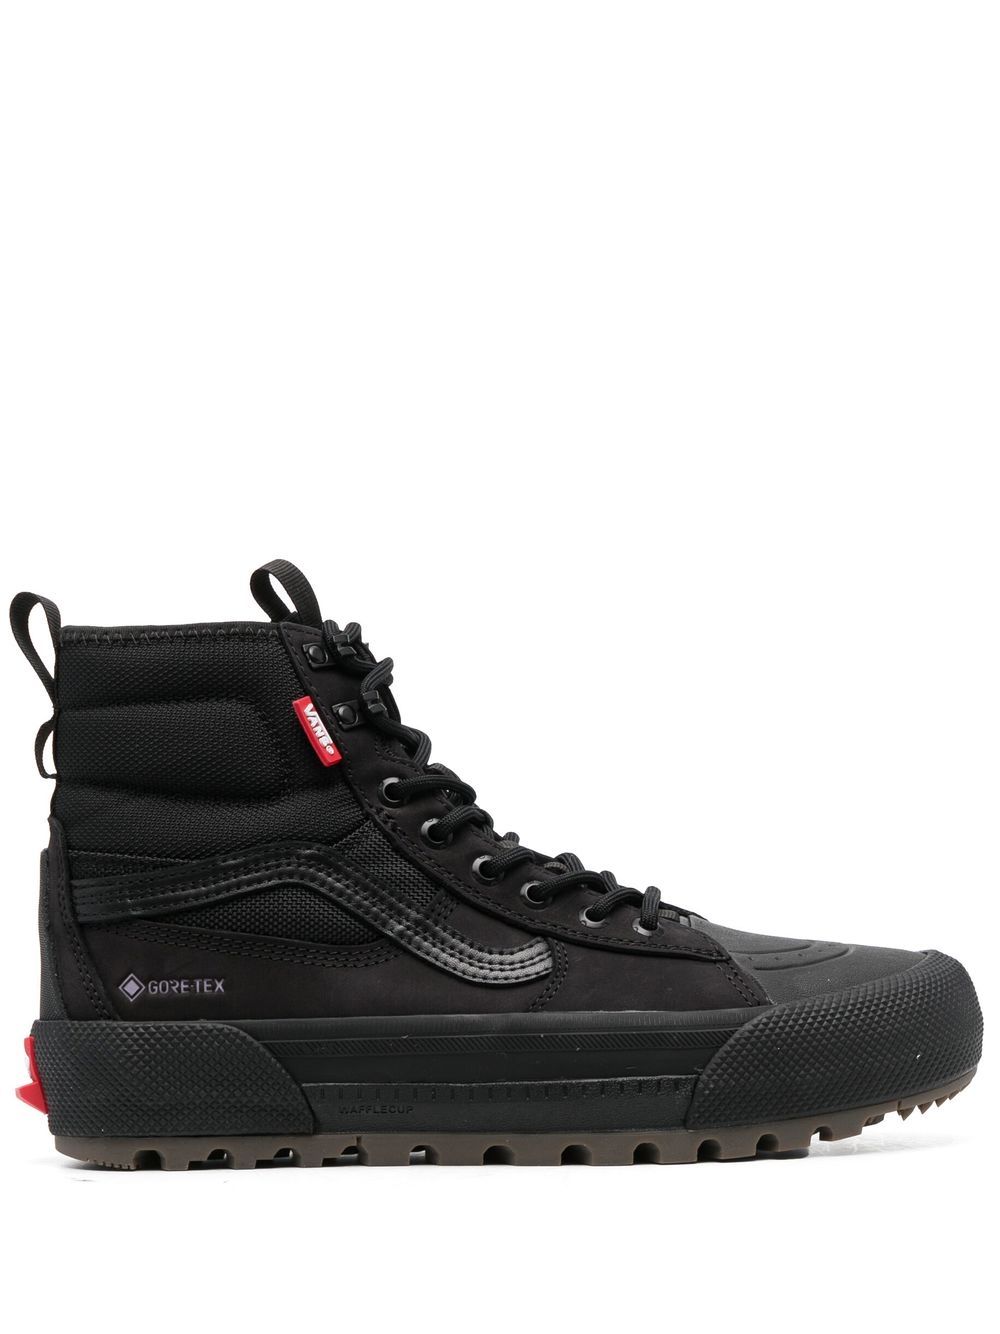 Vans Sk8-hi Gore Tex Sneakers In Black/black